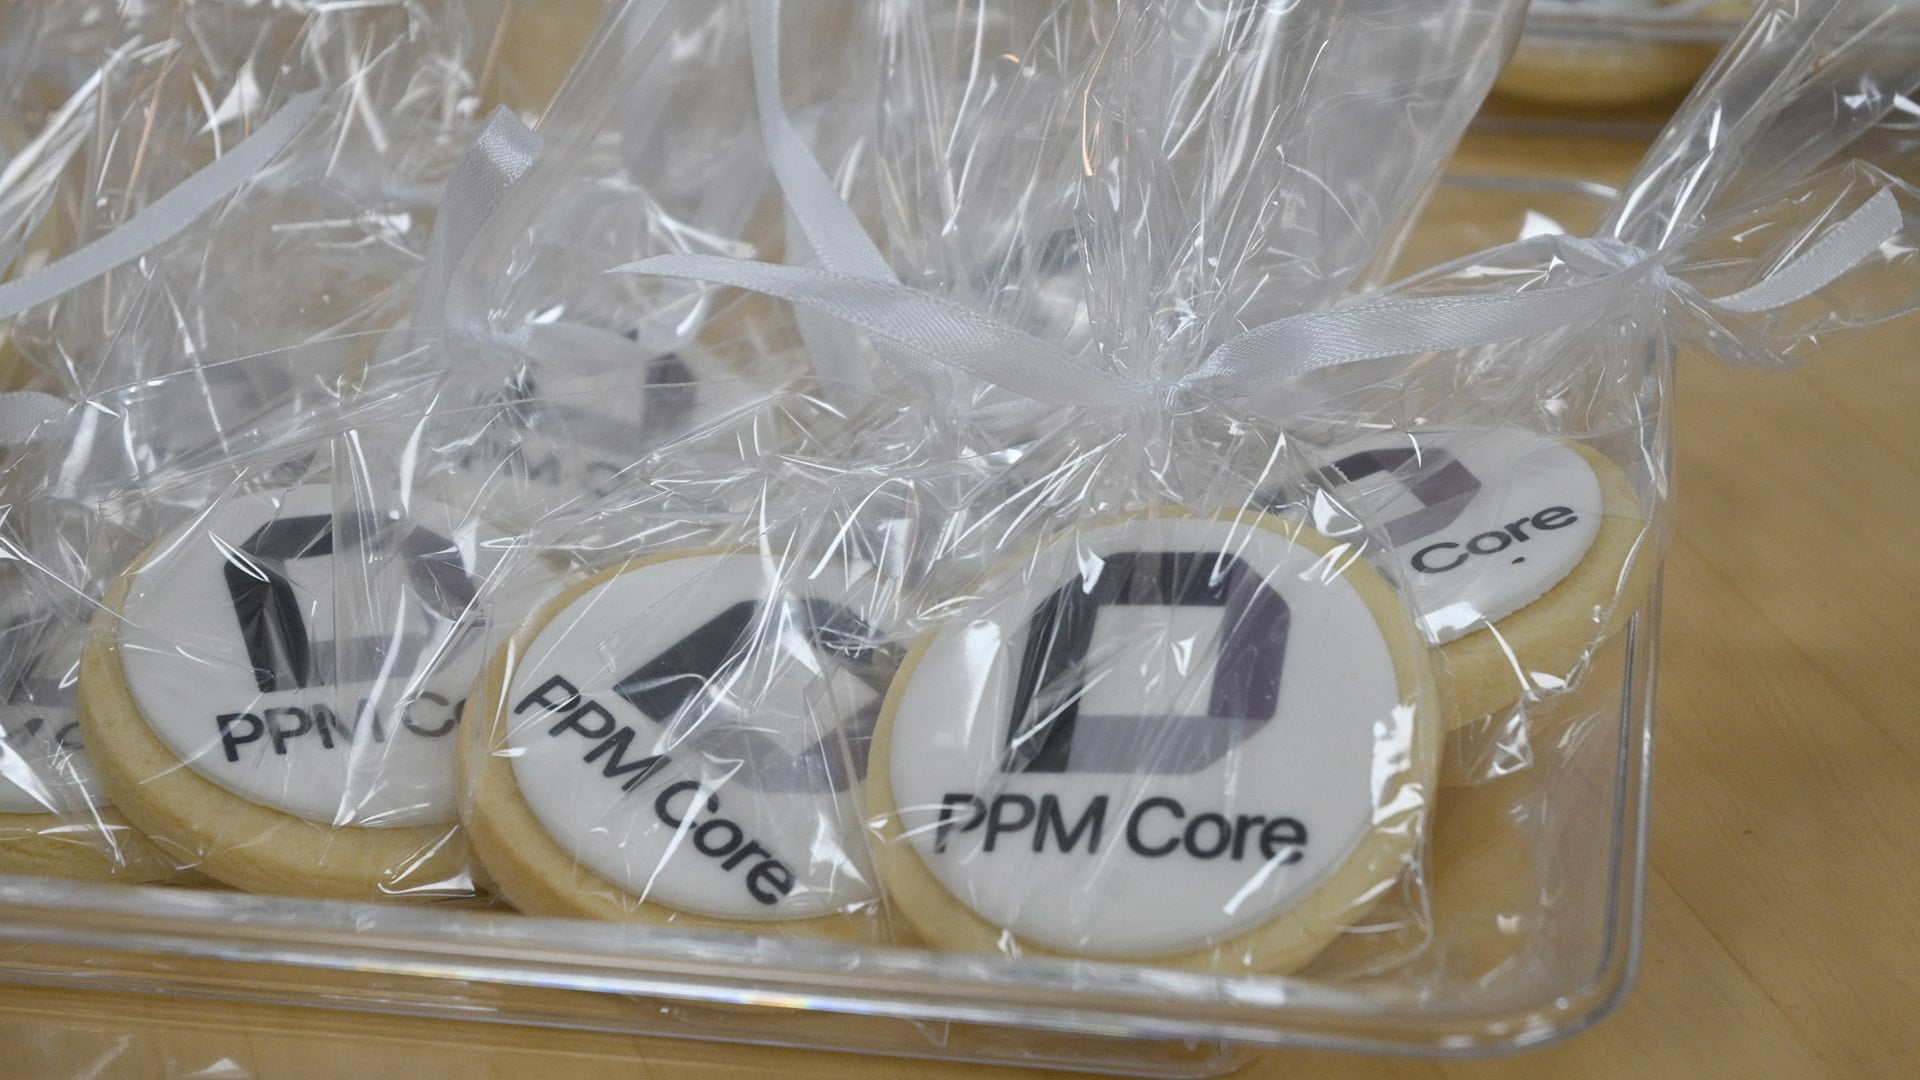 ppm core - launch